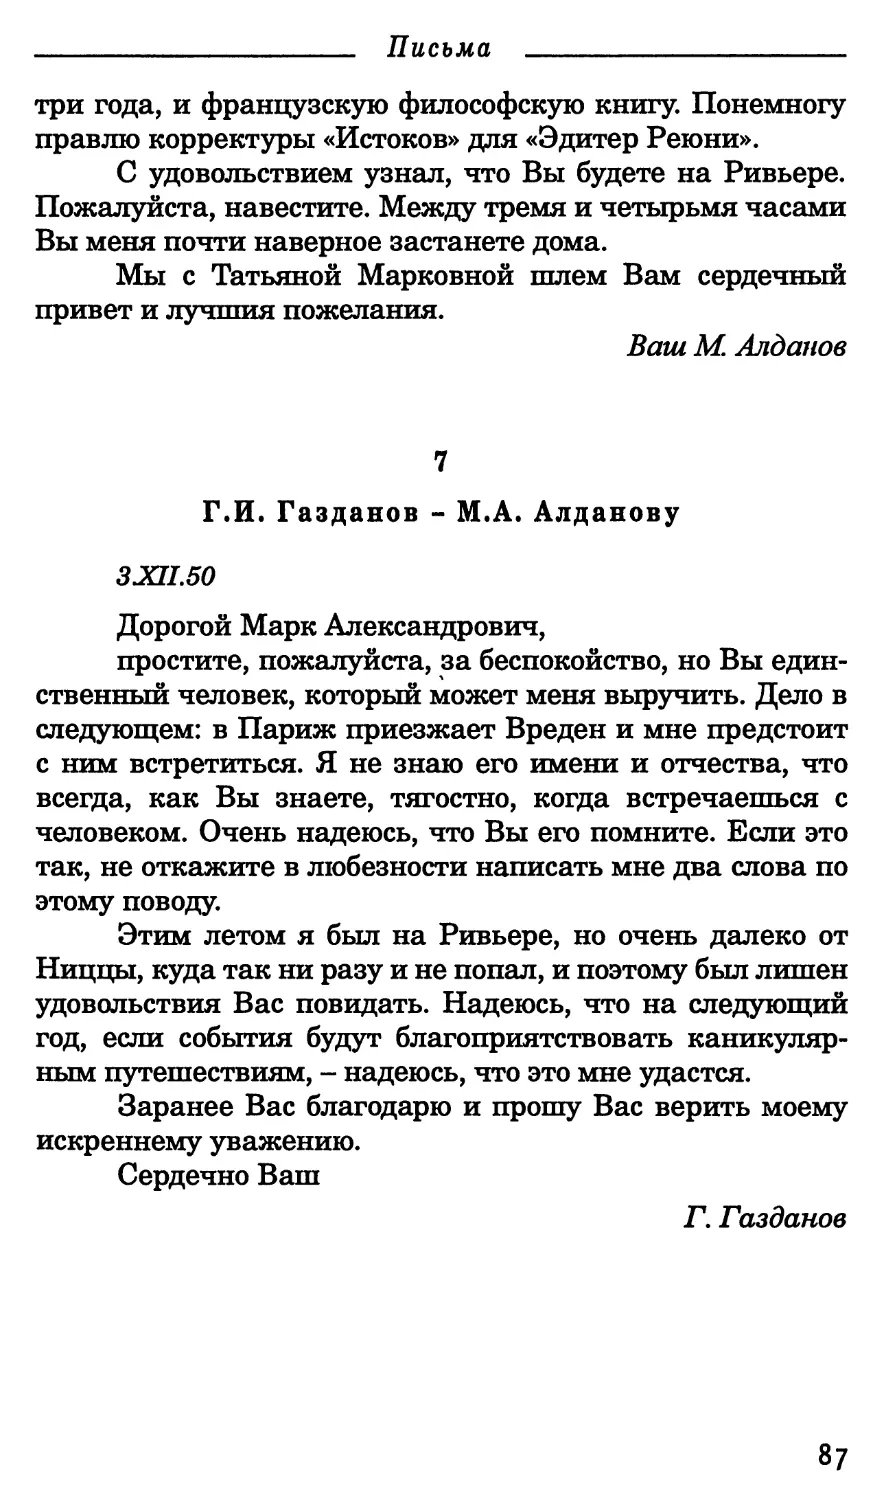 7. Г.И. Газданов - М.А. Алданову. 3 декабря 1950 г.